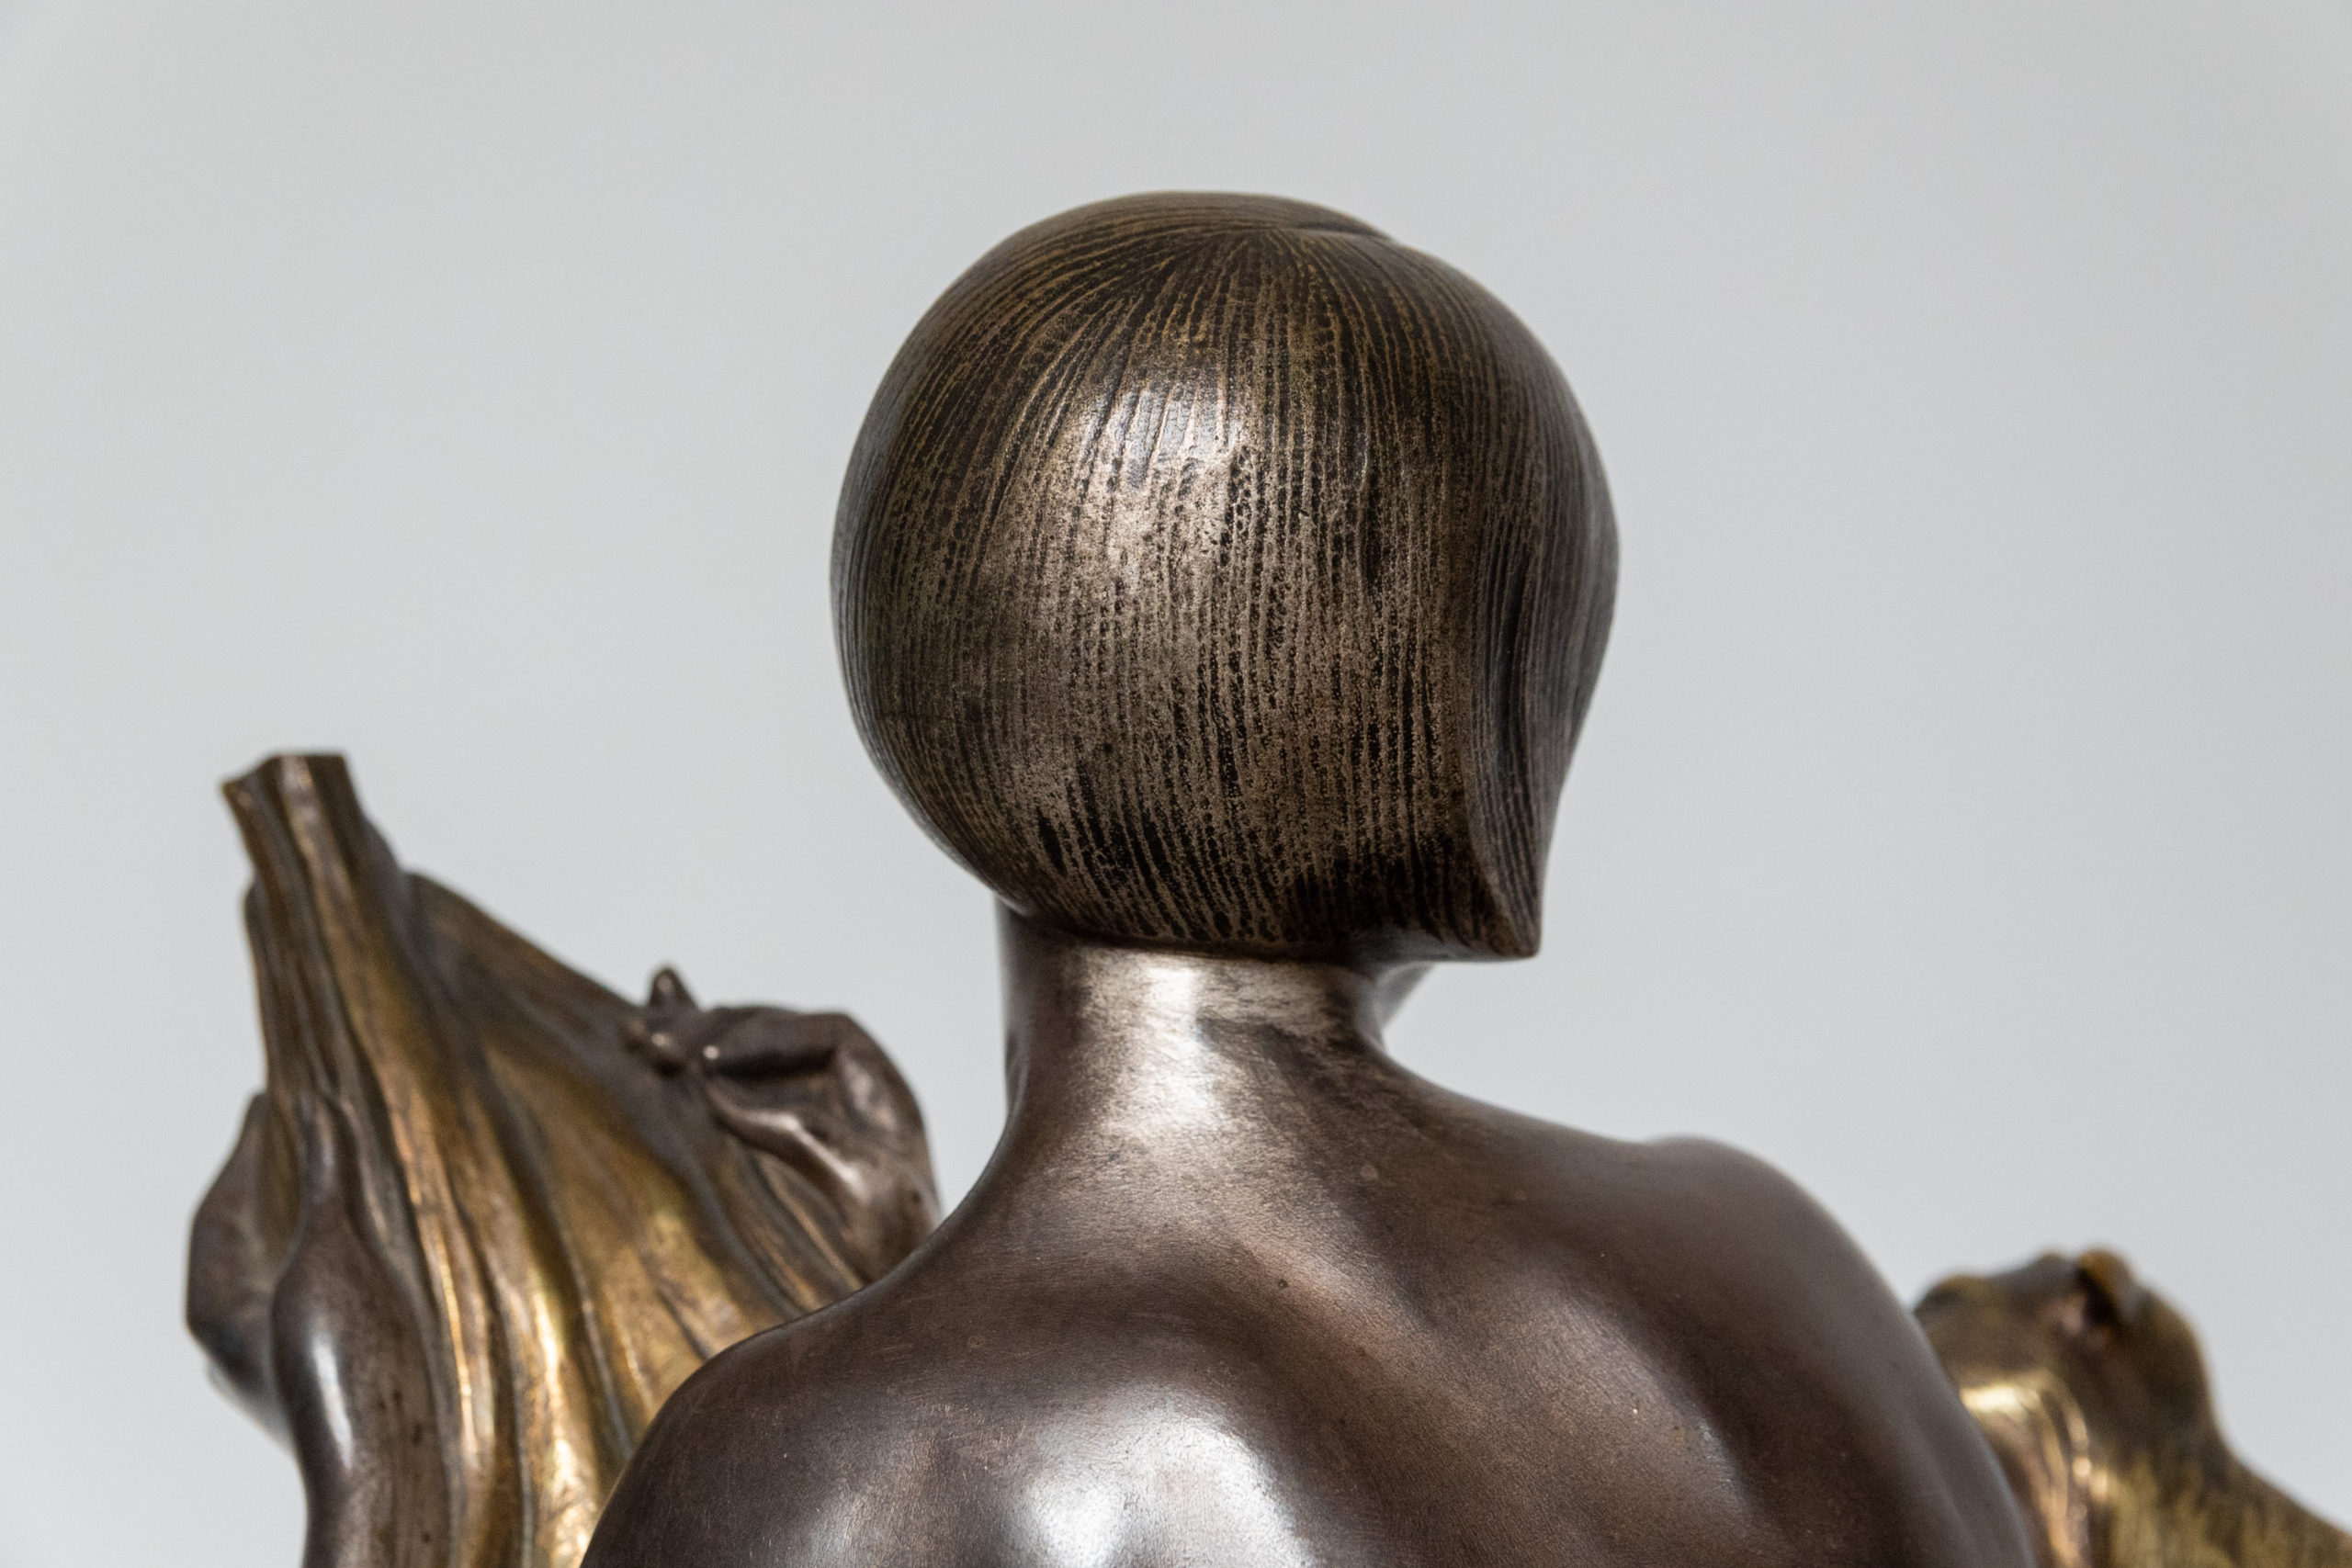 Armand-godard-sculpture-bronze-argenté-art-deco-XXe-france-aurore-morisse-affaire-conclue-antiquaire-liege-belgique9